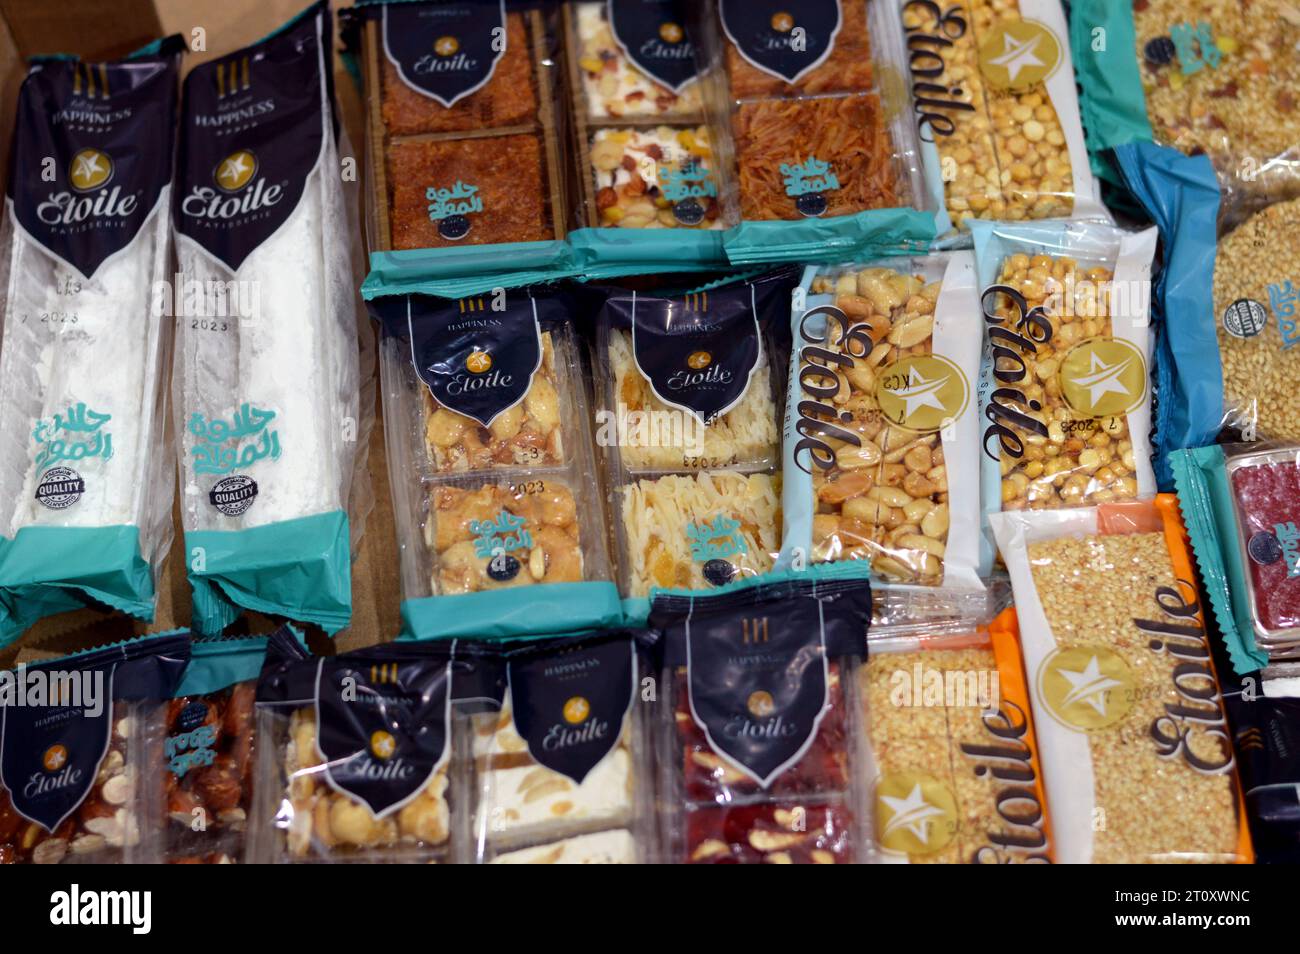 Cairo, Egitto, settembre 29 2023: Scatola di Etolie collezione di varie caramelle orientali, arachidi, sesamo, cioccolato, noci, nocciole e mandorle come ce Foto Stock